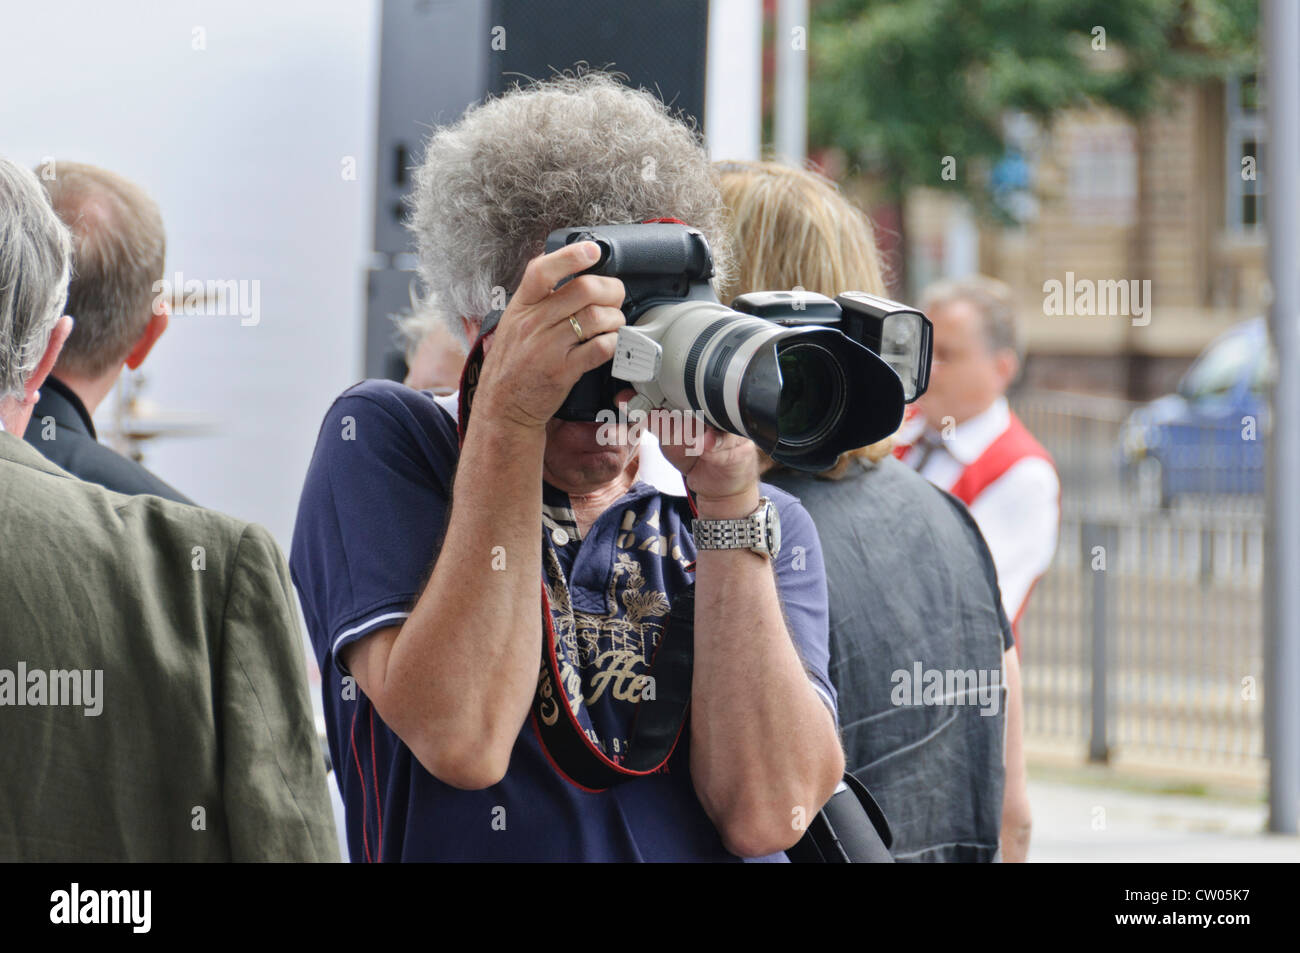 Adulto uomo caucasico con il grigio capelli ricci, maschio professionale fotografo, prendendo le immagini con un frame completo Canon DSLR Foto Stock